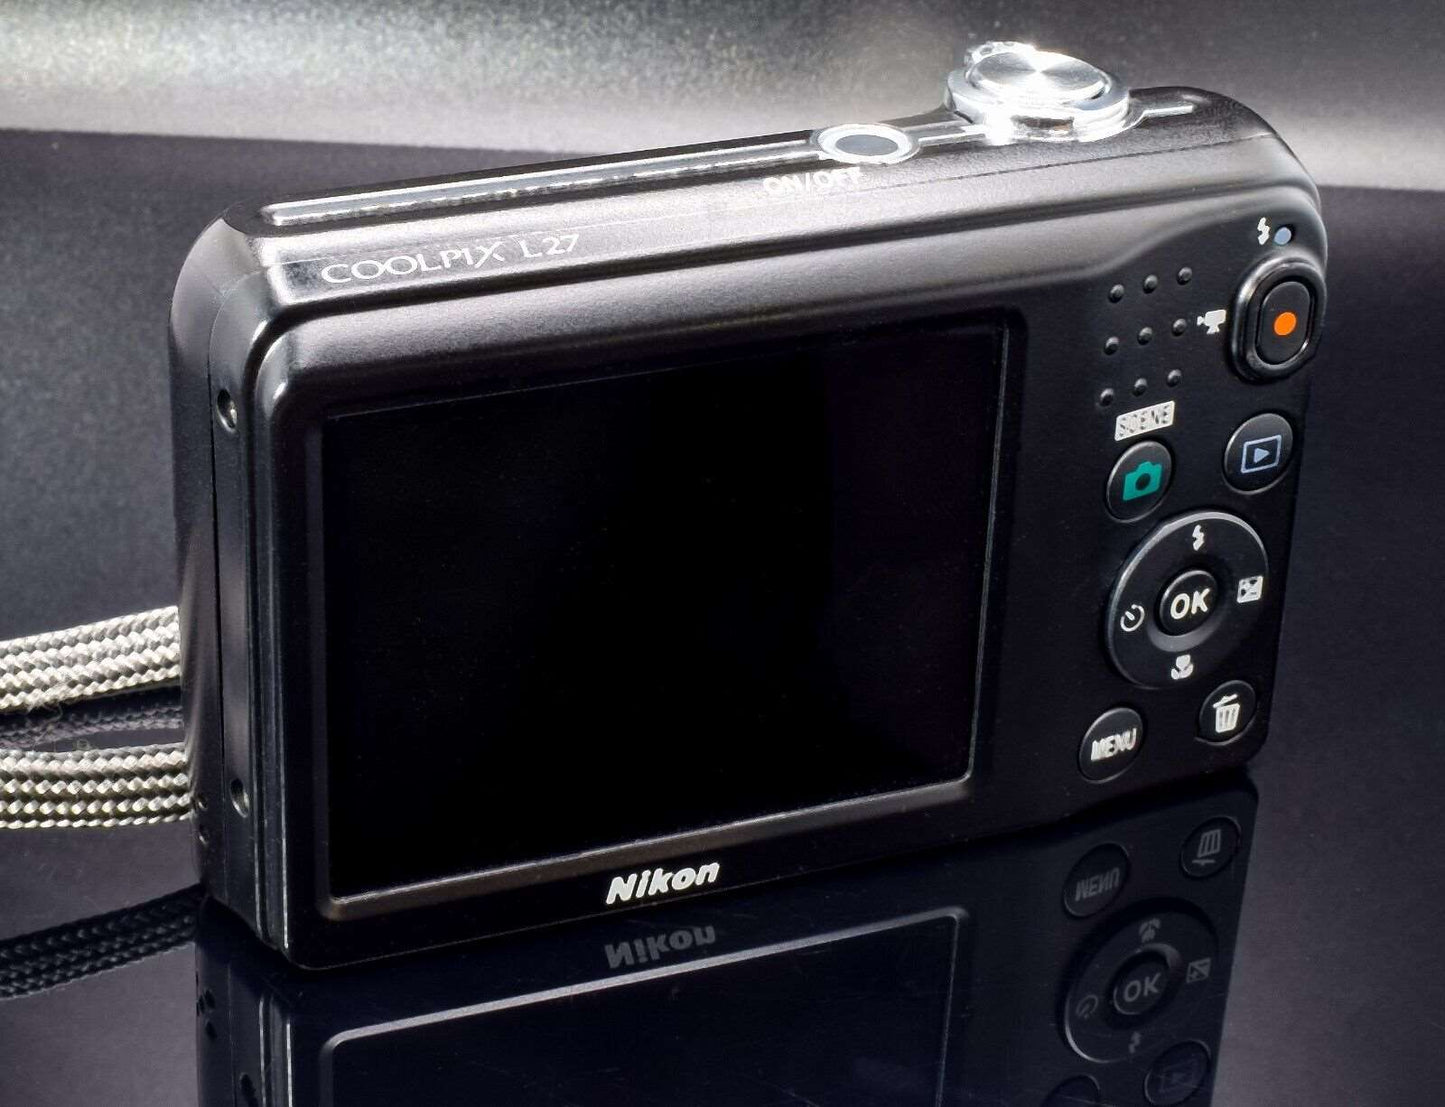 Nikon Digital Camera Coolpix L27 16.1 MP Black Nikkor 4.6-23mm Wide Zoom Lens